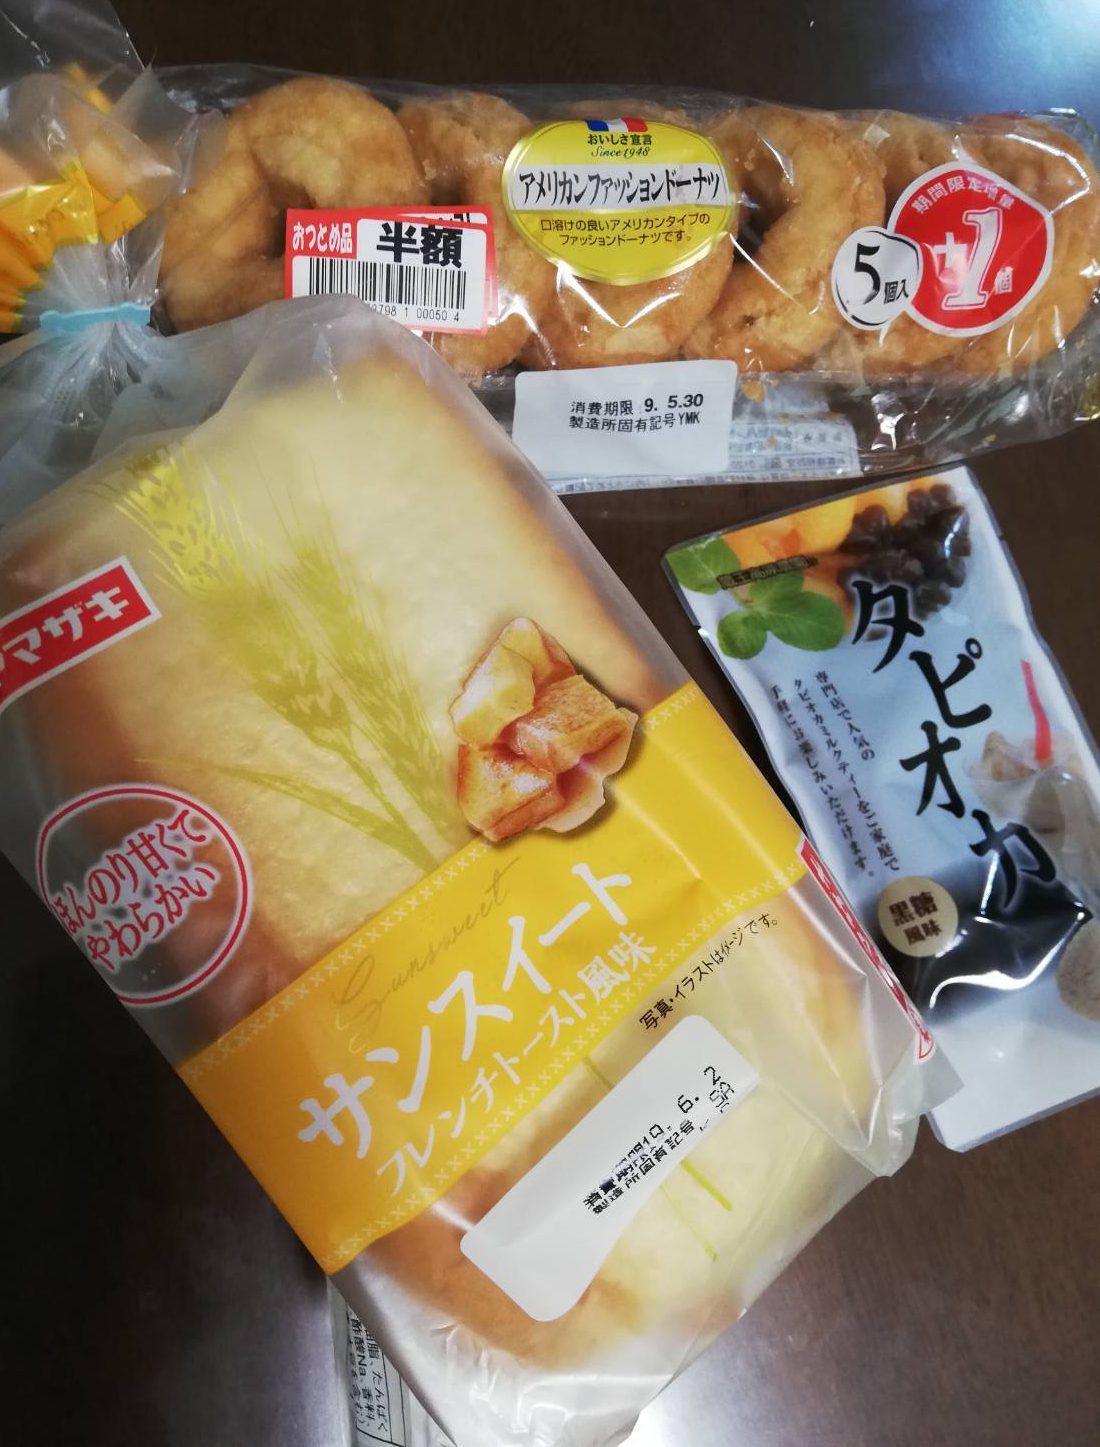 ロピアのパンが安い ロピア松戸店で100円以内ボリューム満点な既成パン体験 松戸ロード 松戸の地域情報